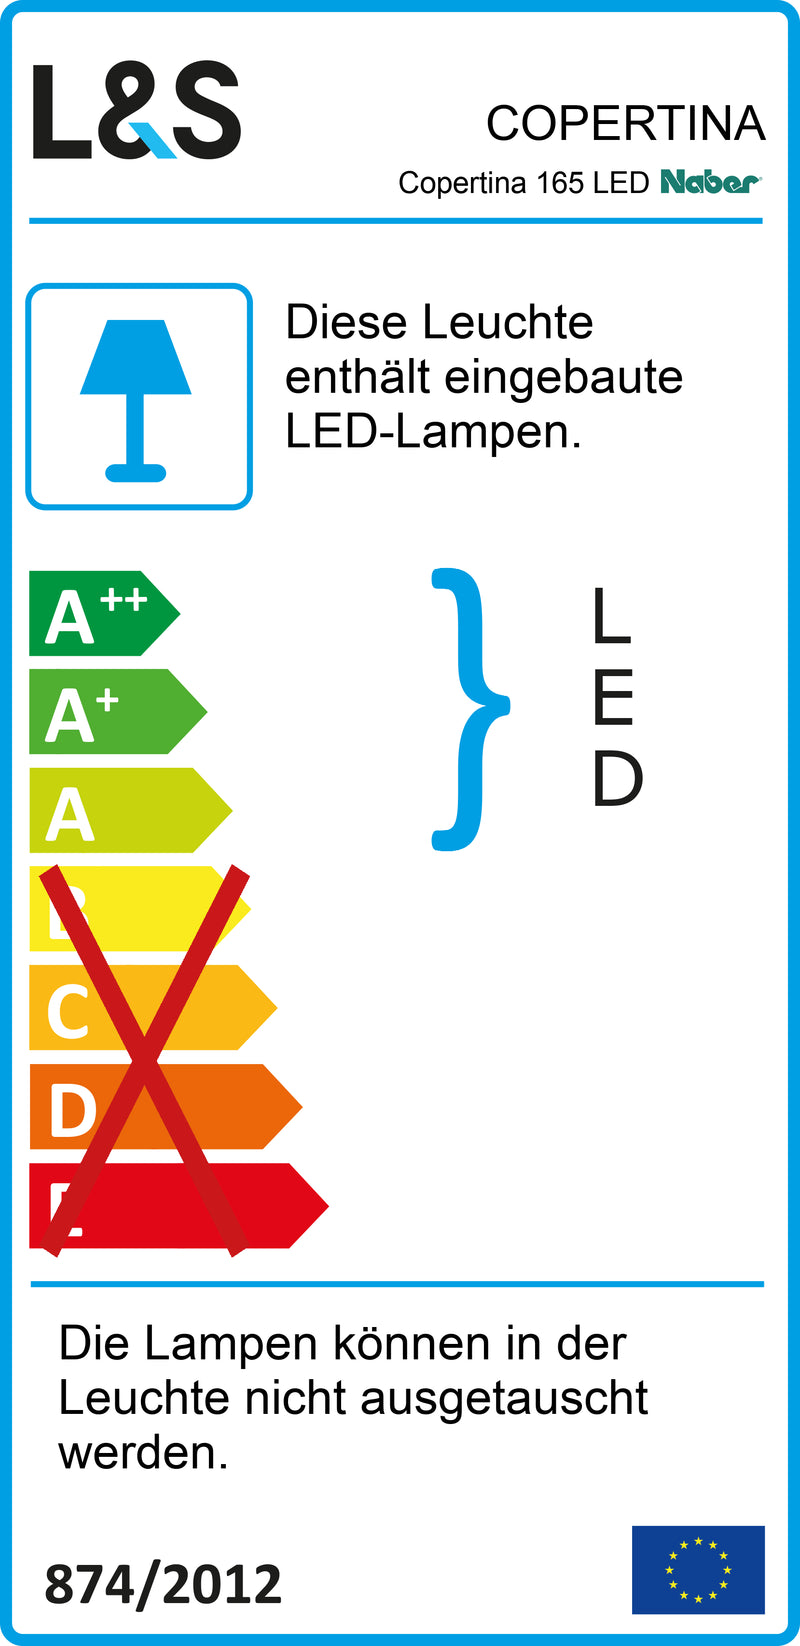 E-Label zu Zeichnung zu Copertina 165 LED als Variante Einzelleuchte, weiß von Naber GmbH in der Kategorie Lichttechnik in Österreich auf conceptshop.at